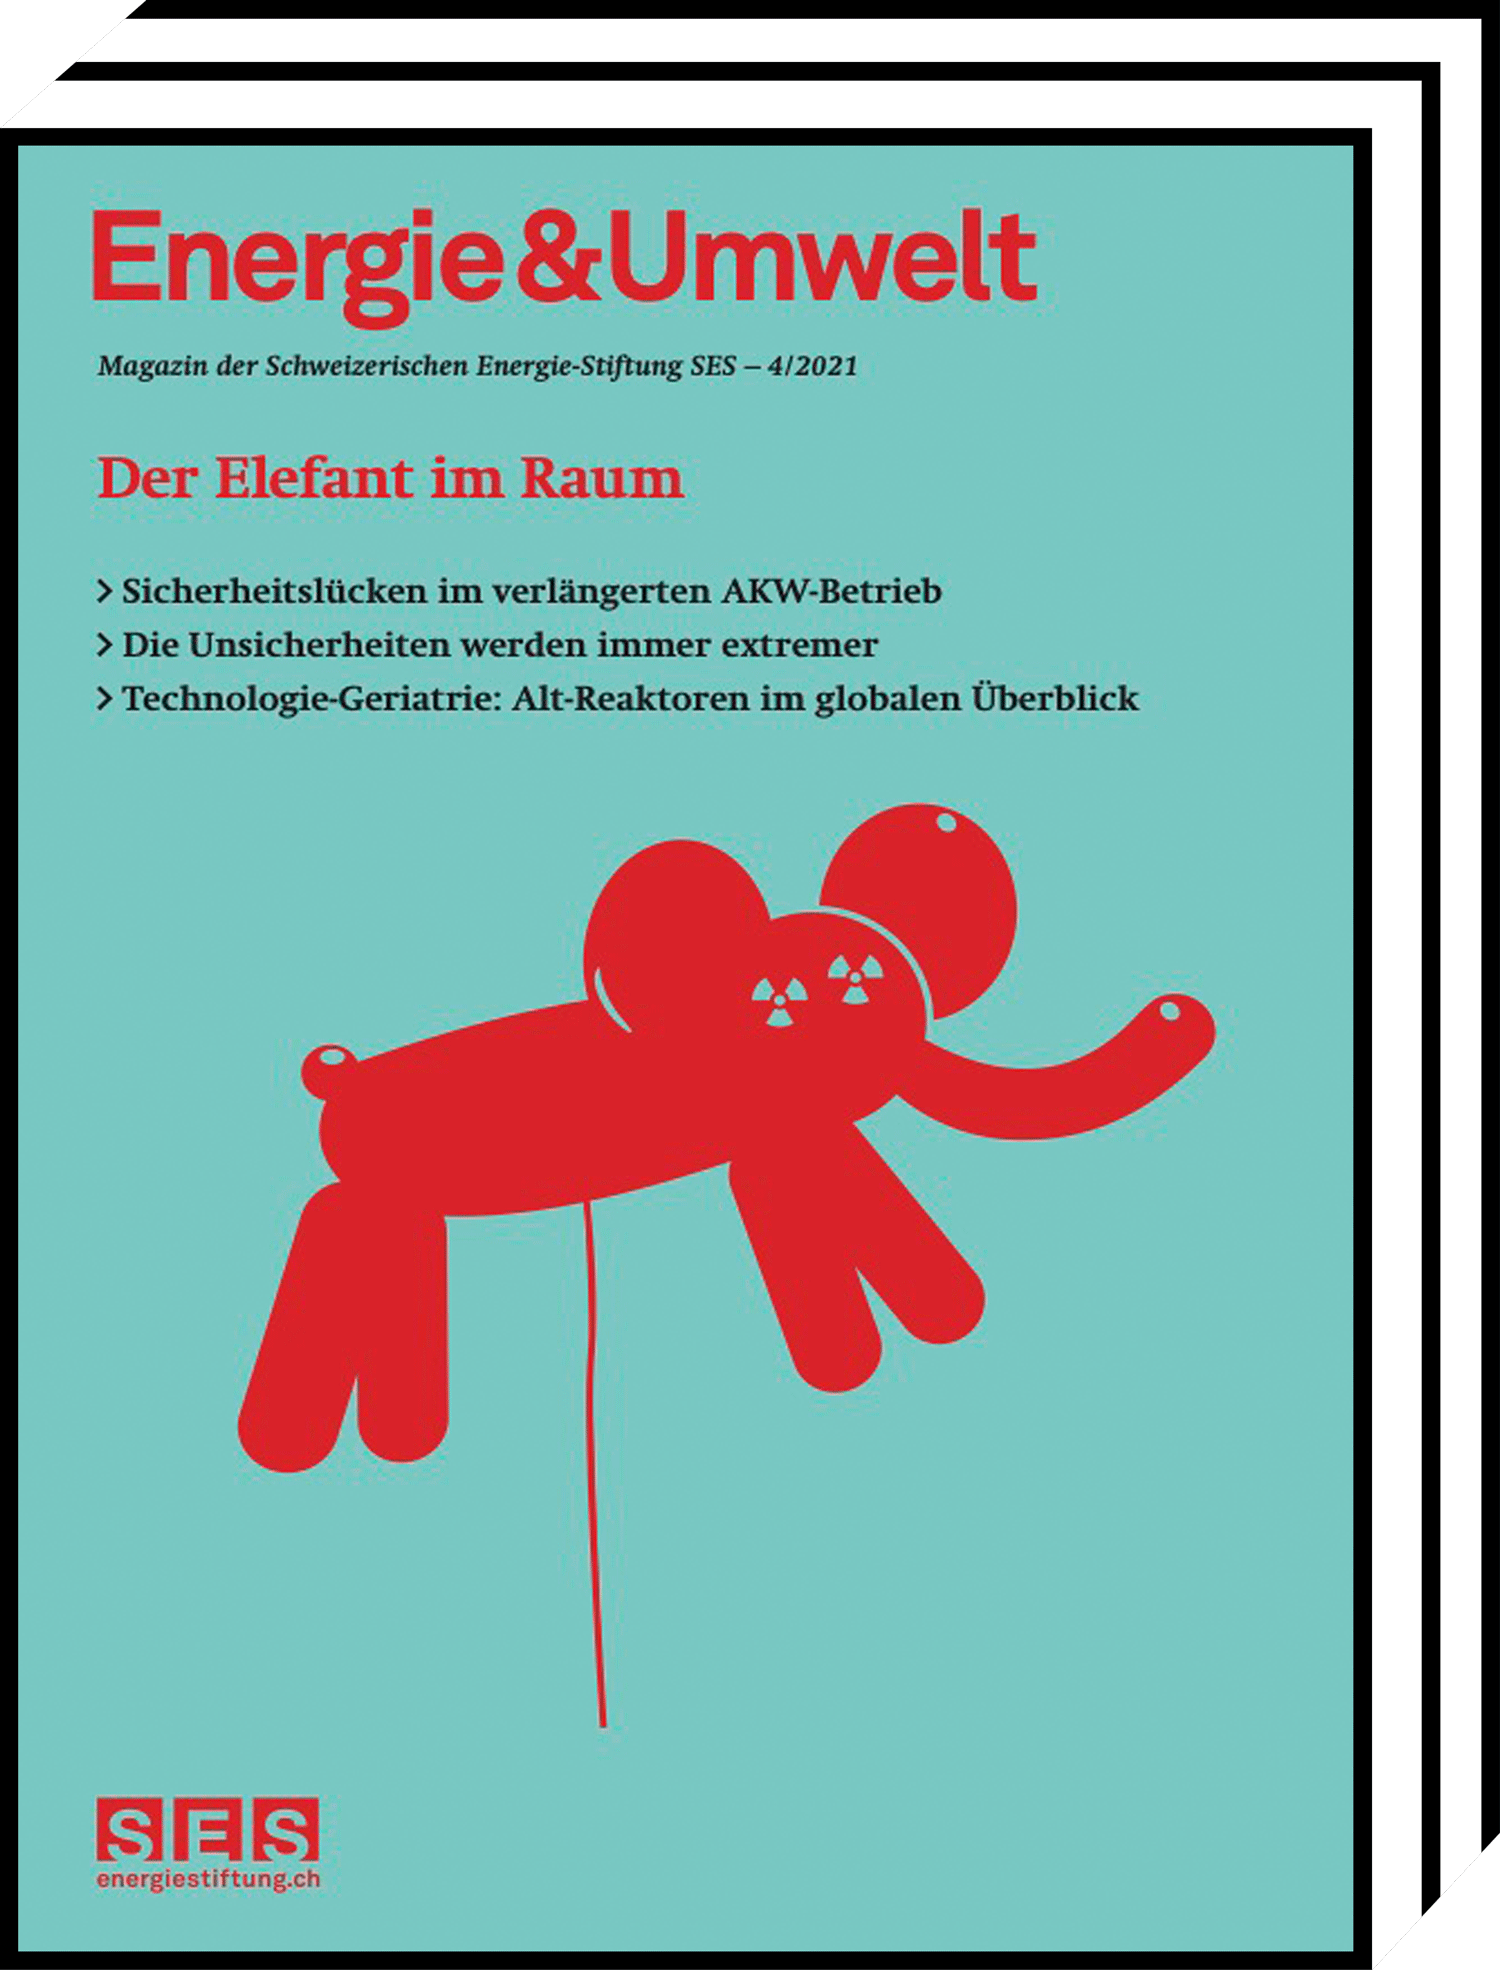 Energie&Umwelt - Der Elefant im Raum